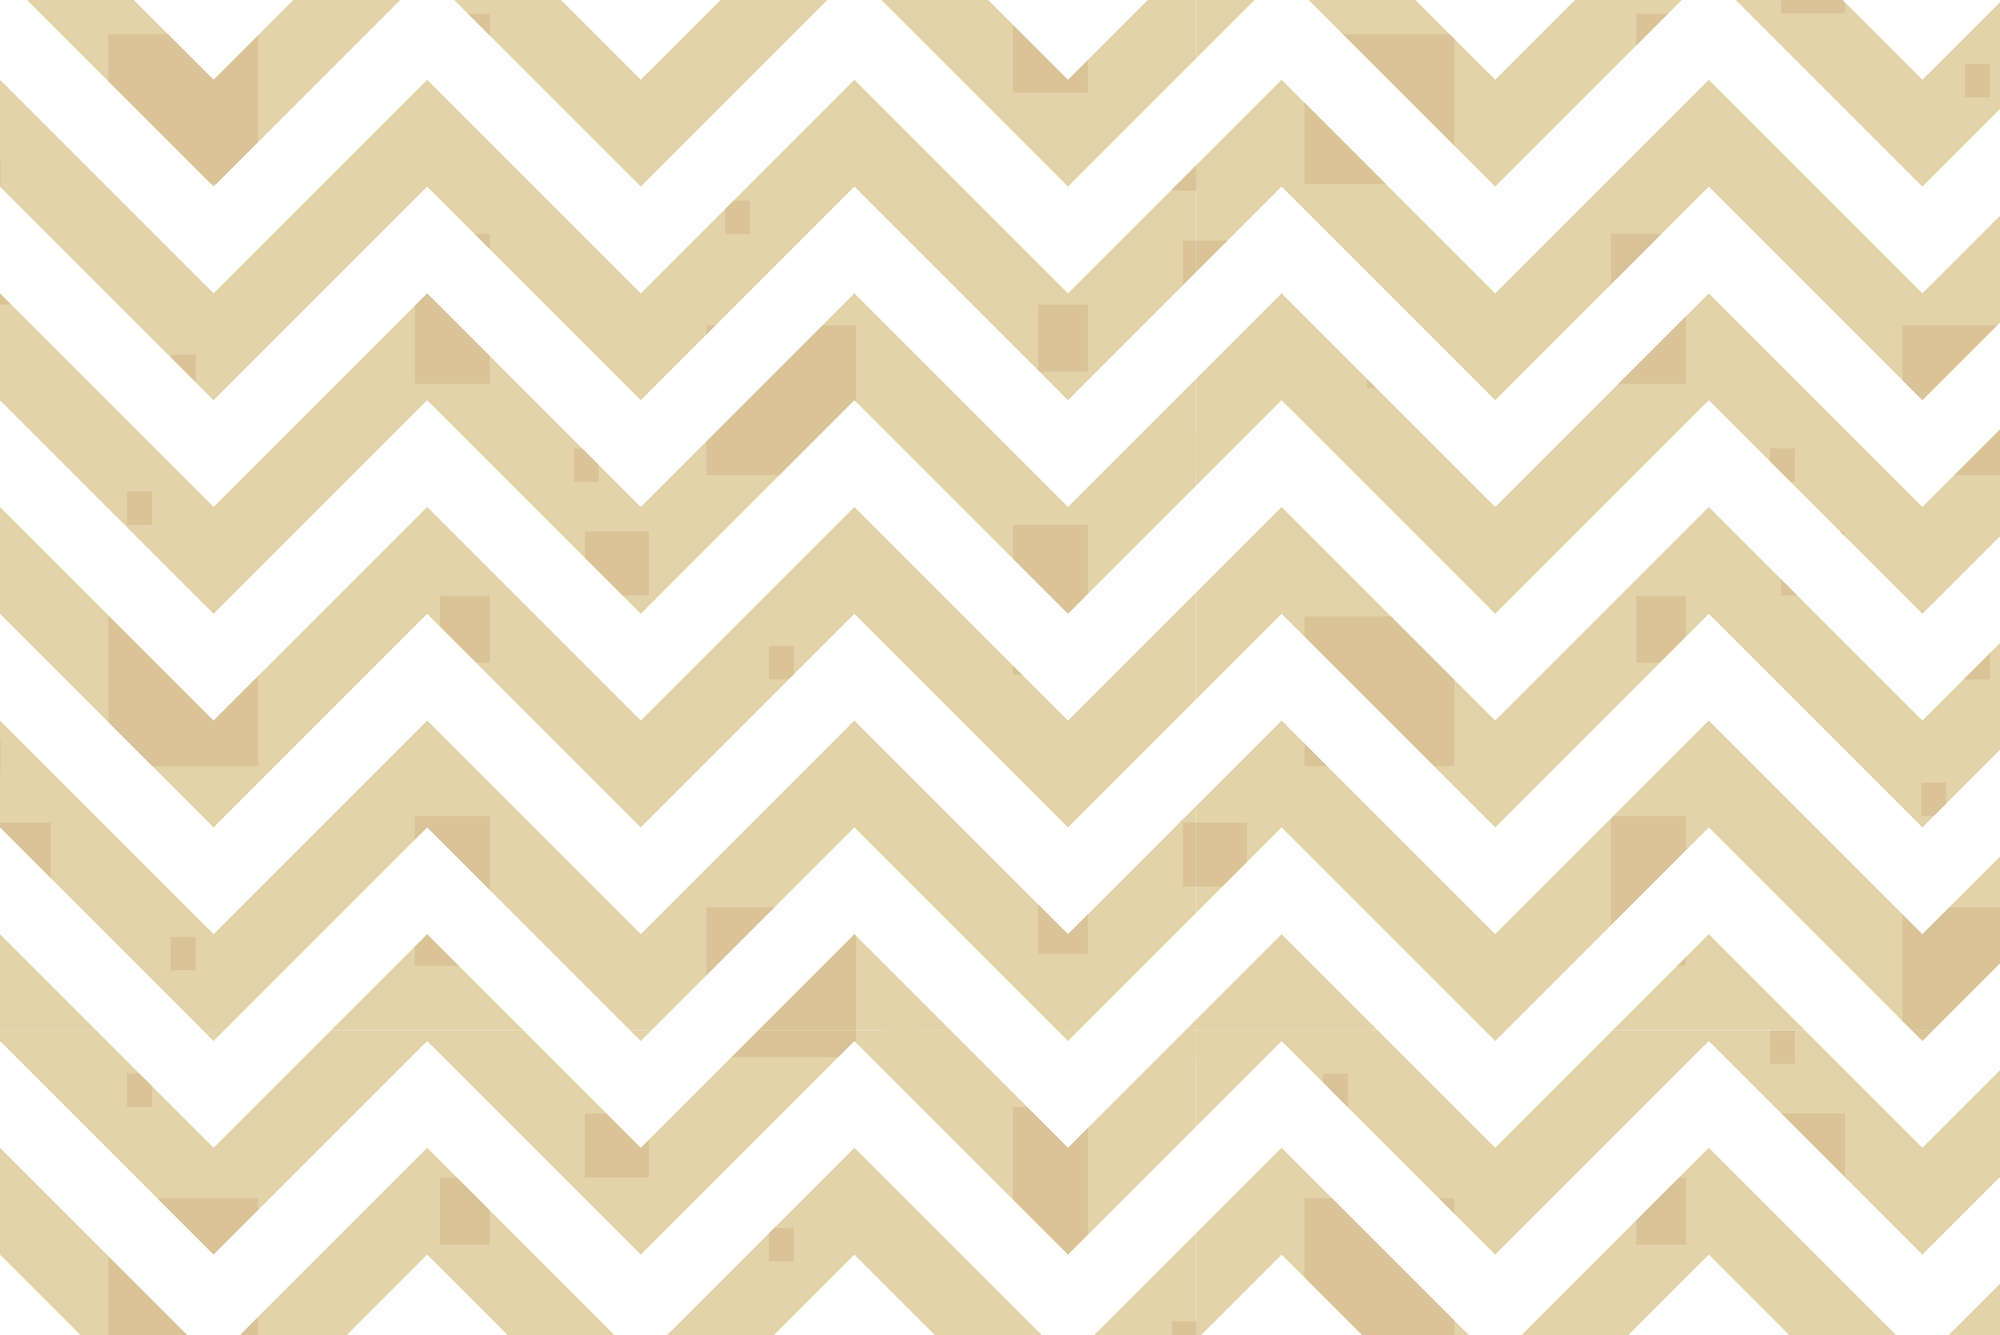             Design behang zigzag patroon met kleine vierkantjes geel op premium gladde fleece
        